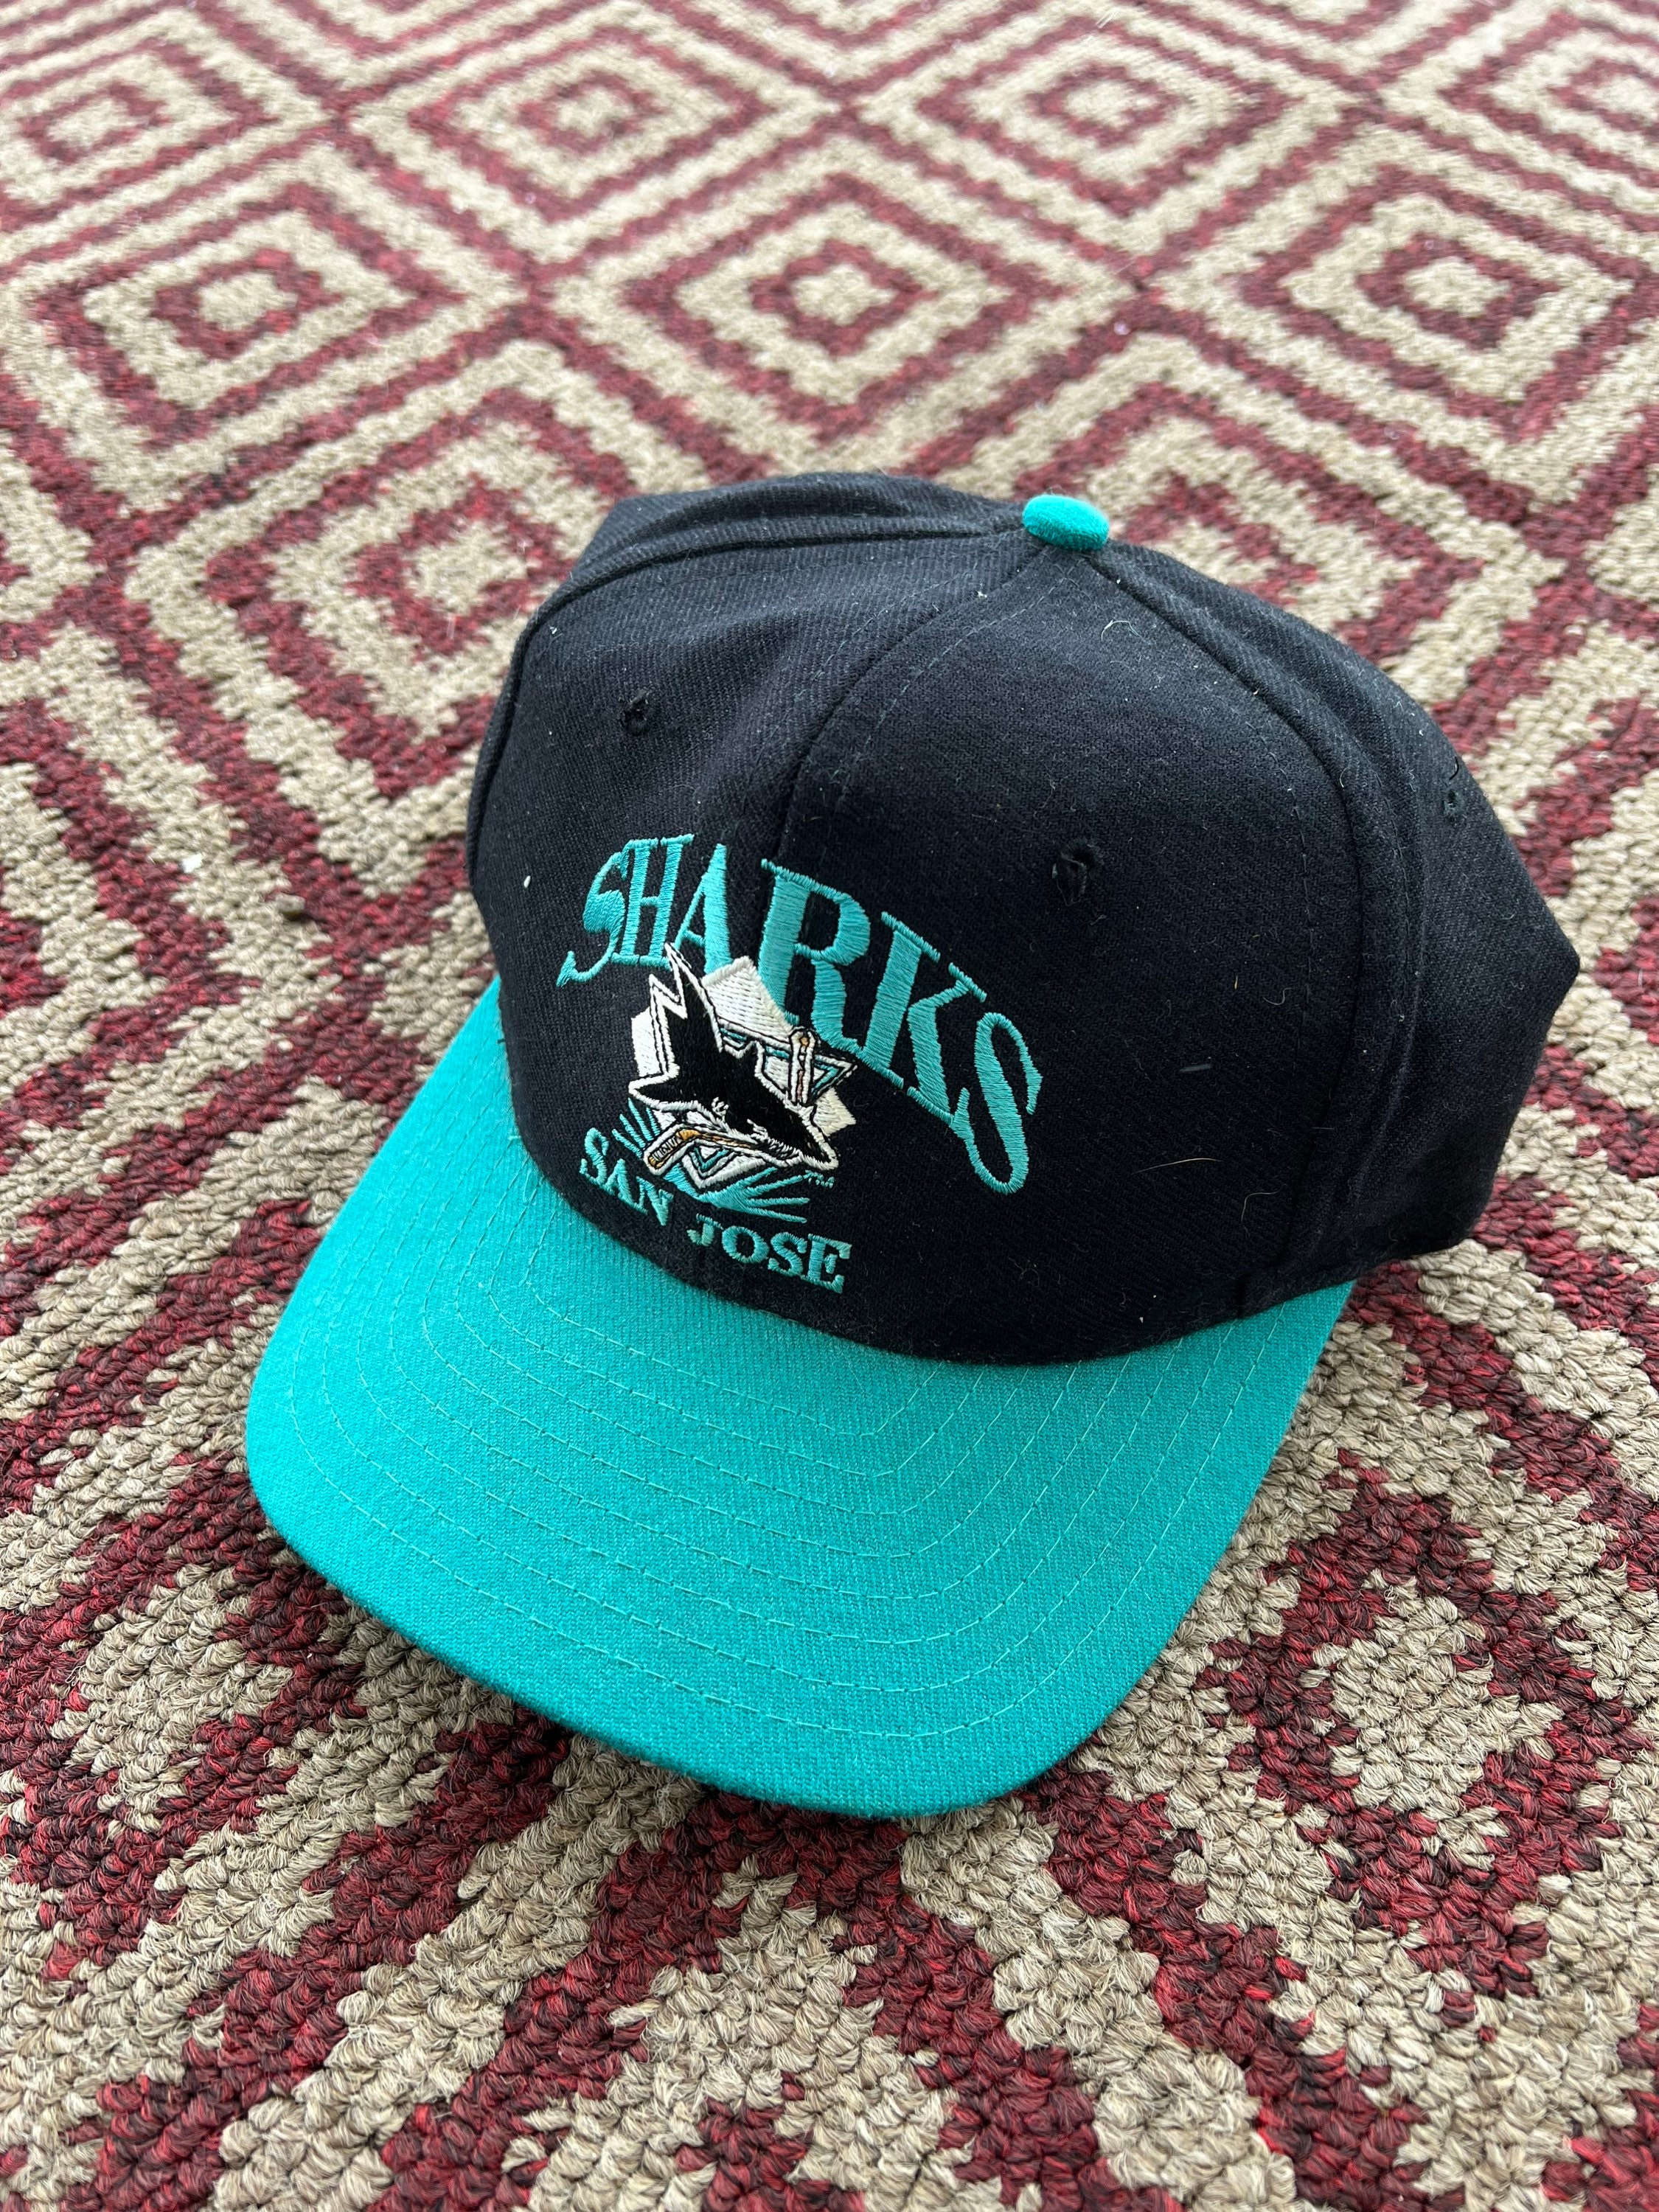 Vintage NHL San Jose Sharks Snapback Hat ANNCO Black Dome 90s Y2K